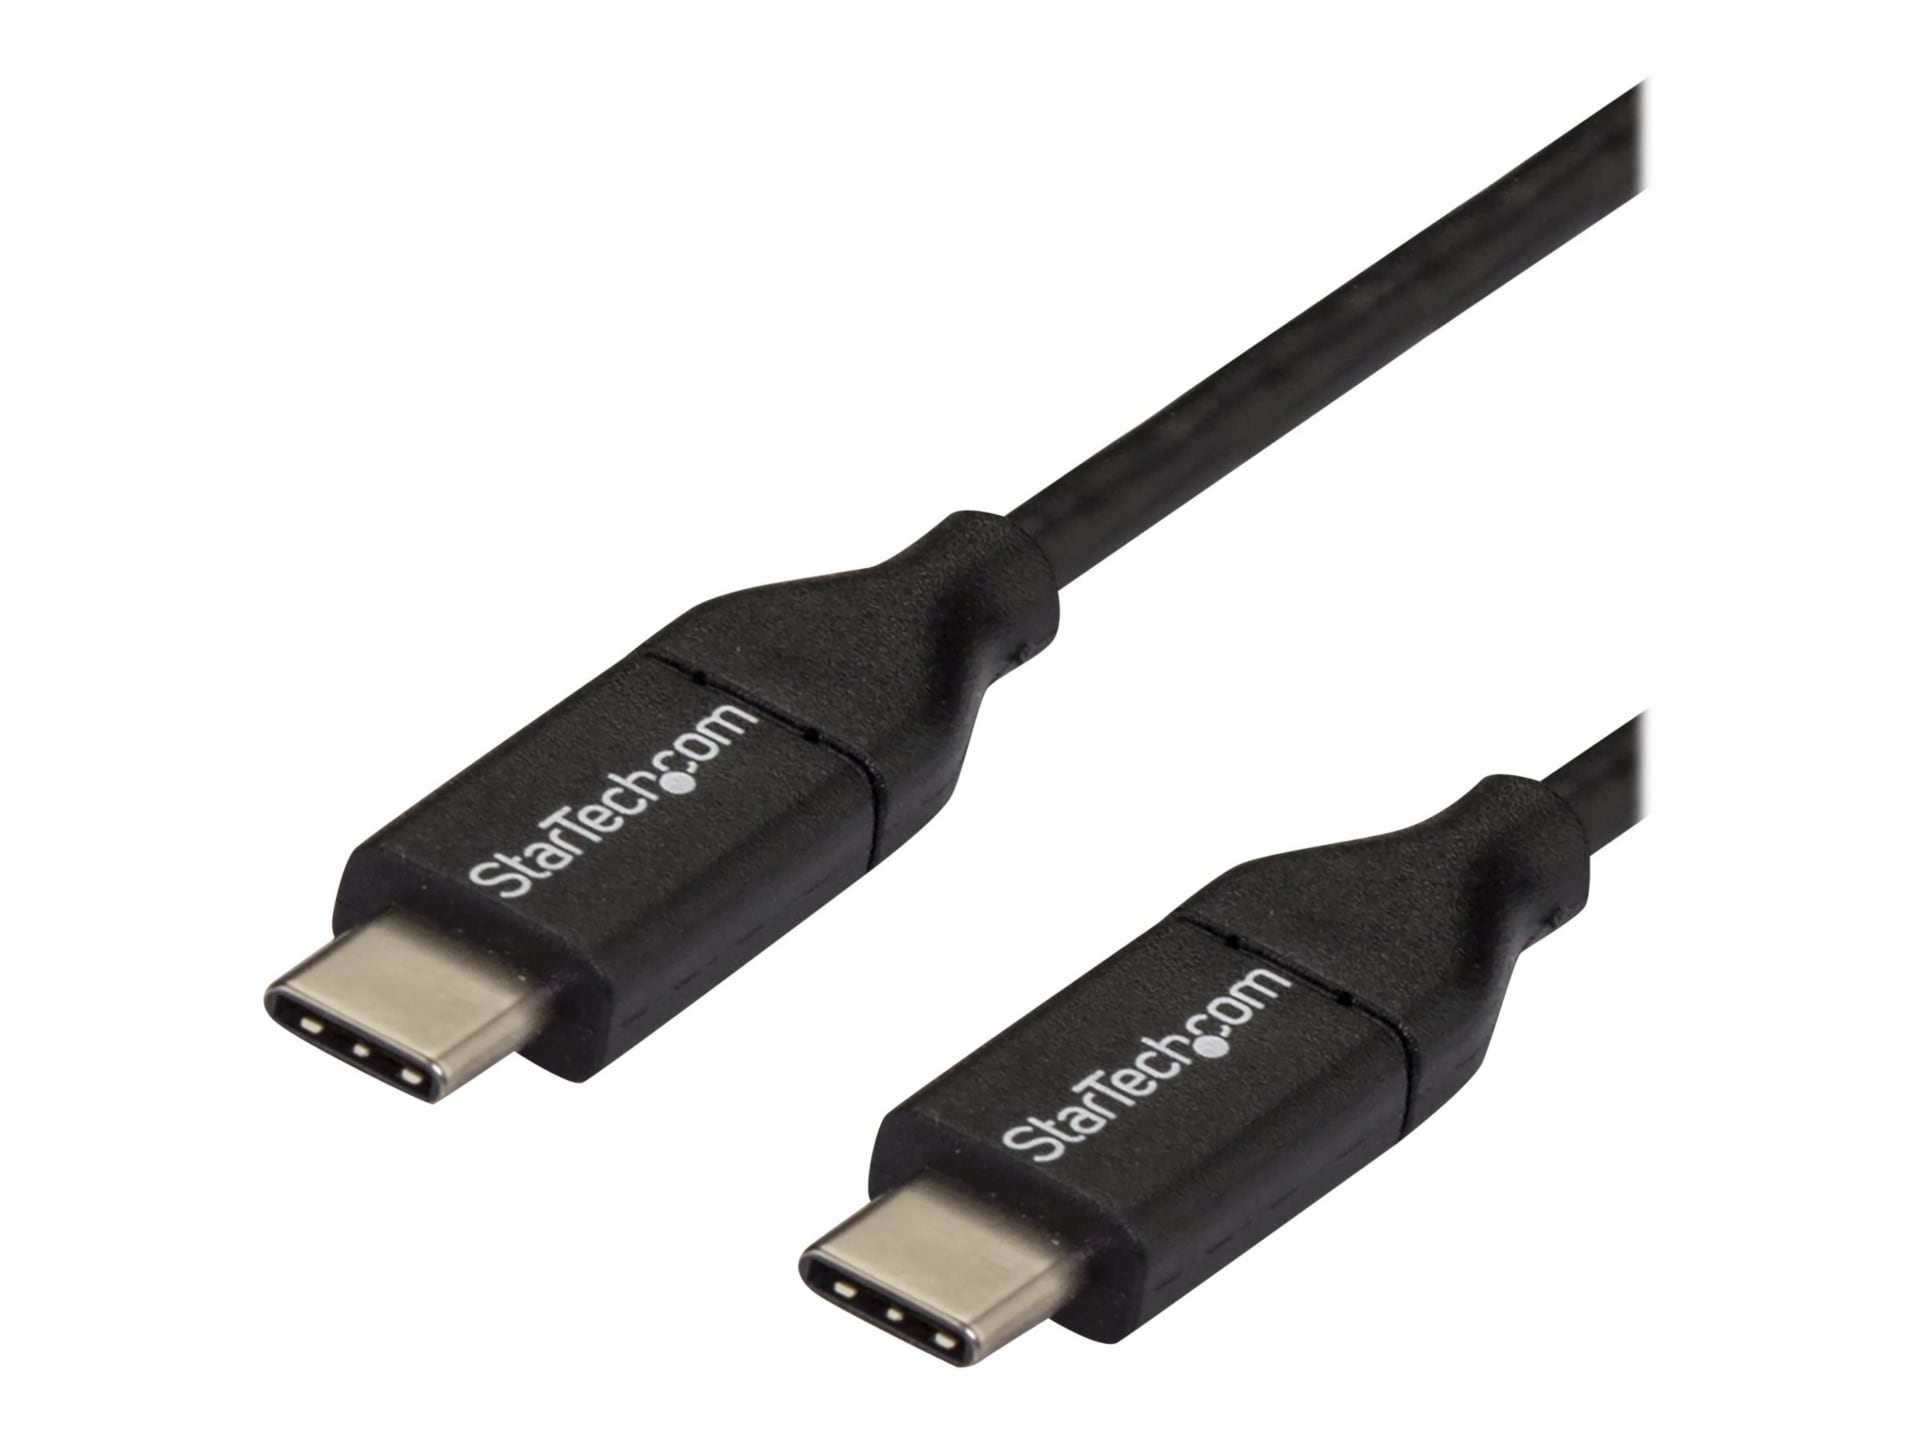 StarTech.com 3m 10 ft USB C to USB C Cable M/M - USB 2.0 - USB Type C Cable - USB2CC3M - USB Cables CDW.com